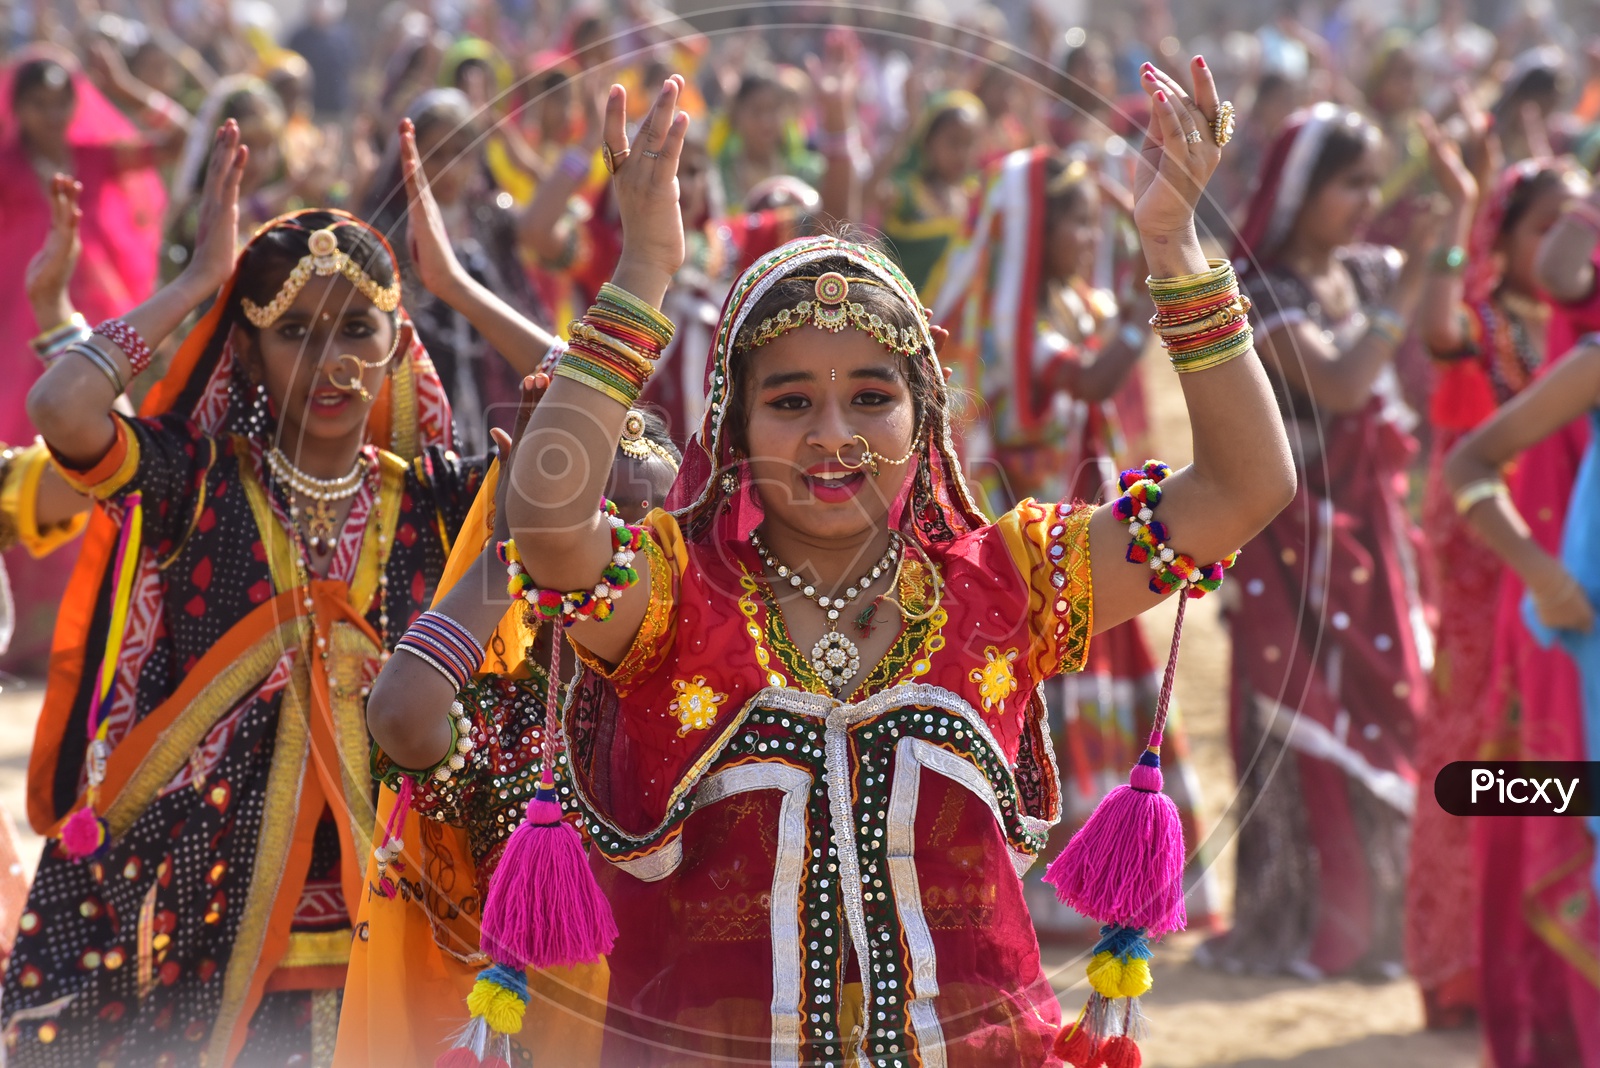 Women in Colorful dresses dancing at Pushkar Camel Fair